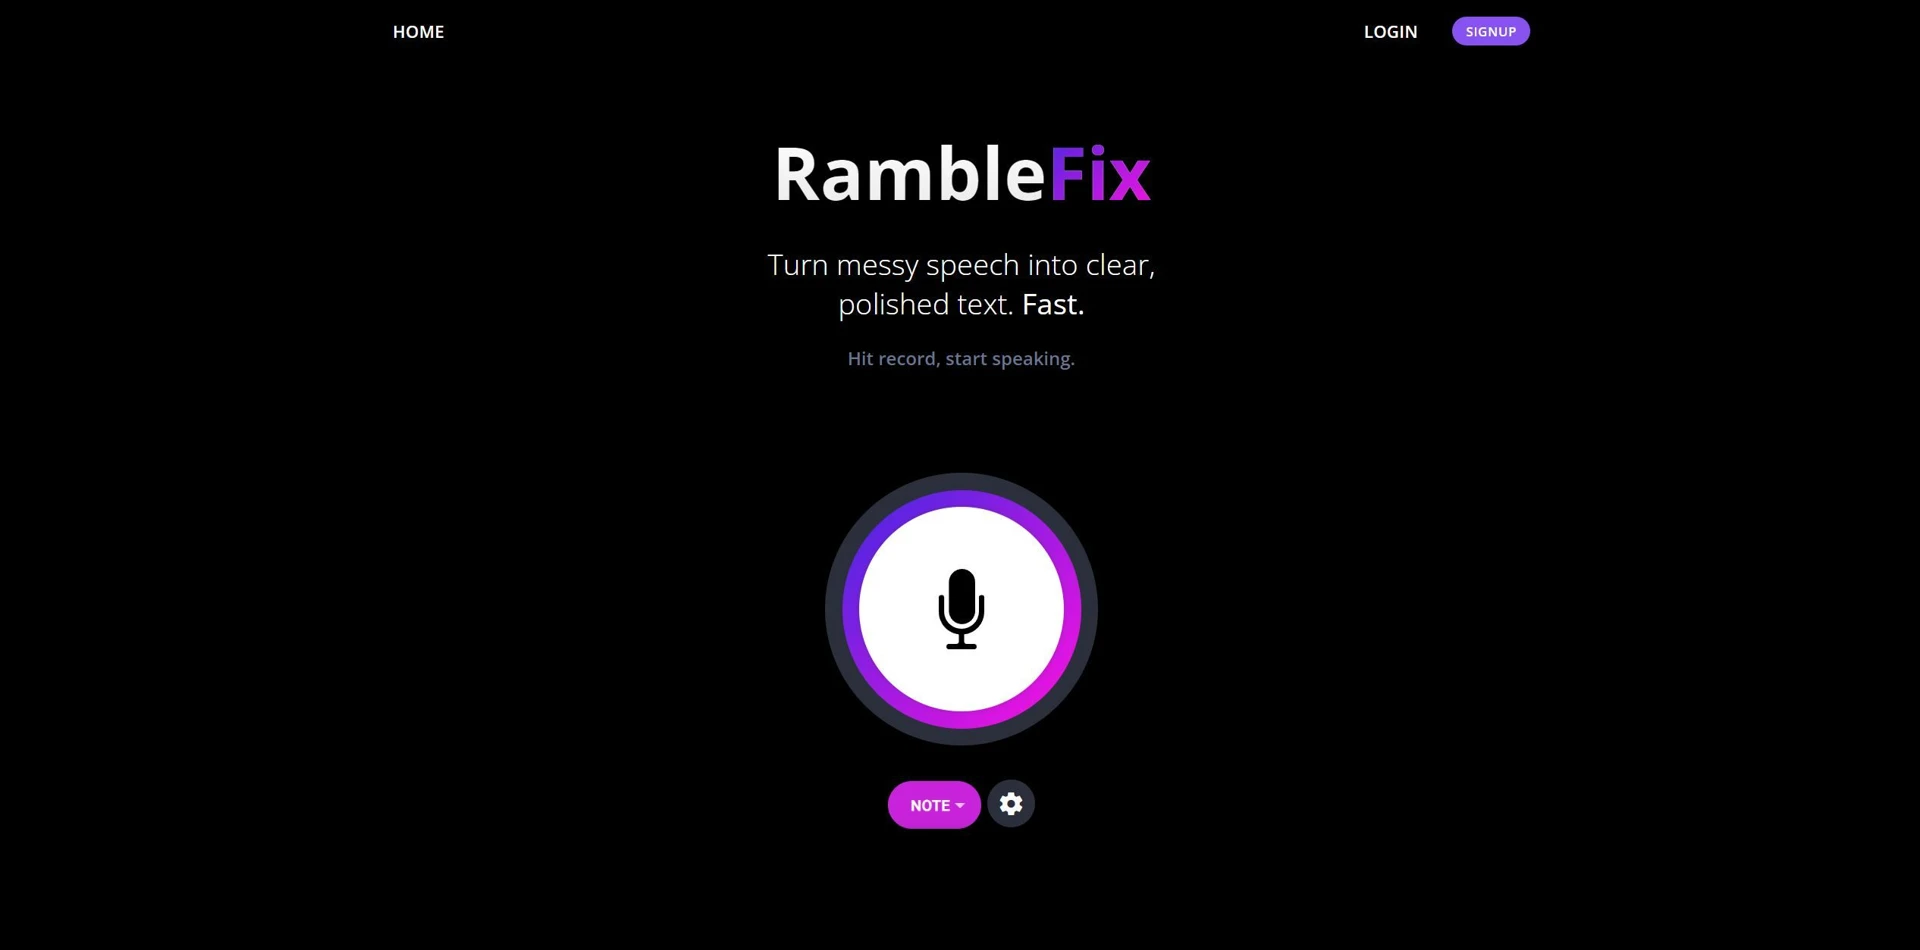 RambleFixwebsite picture